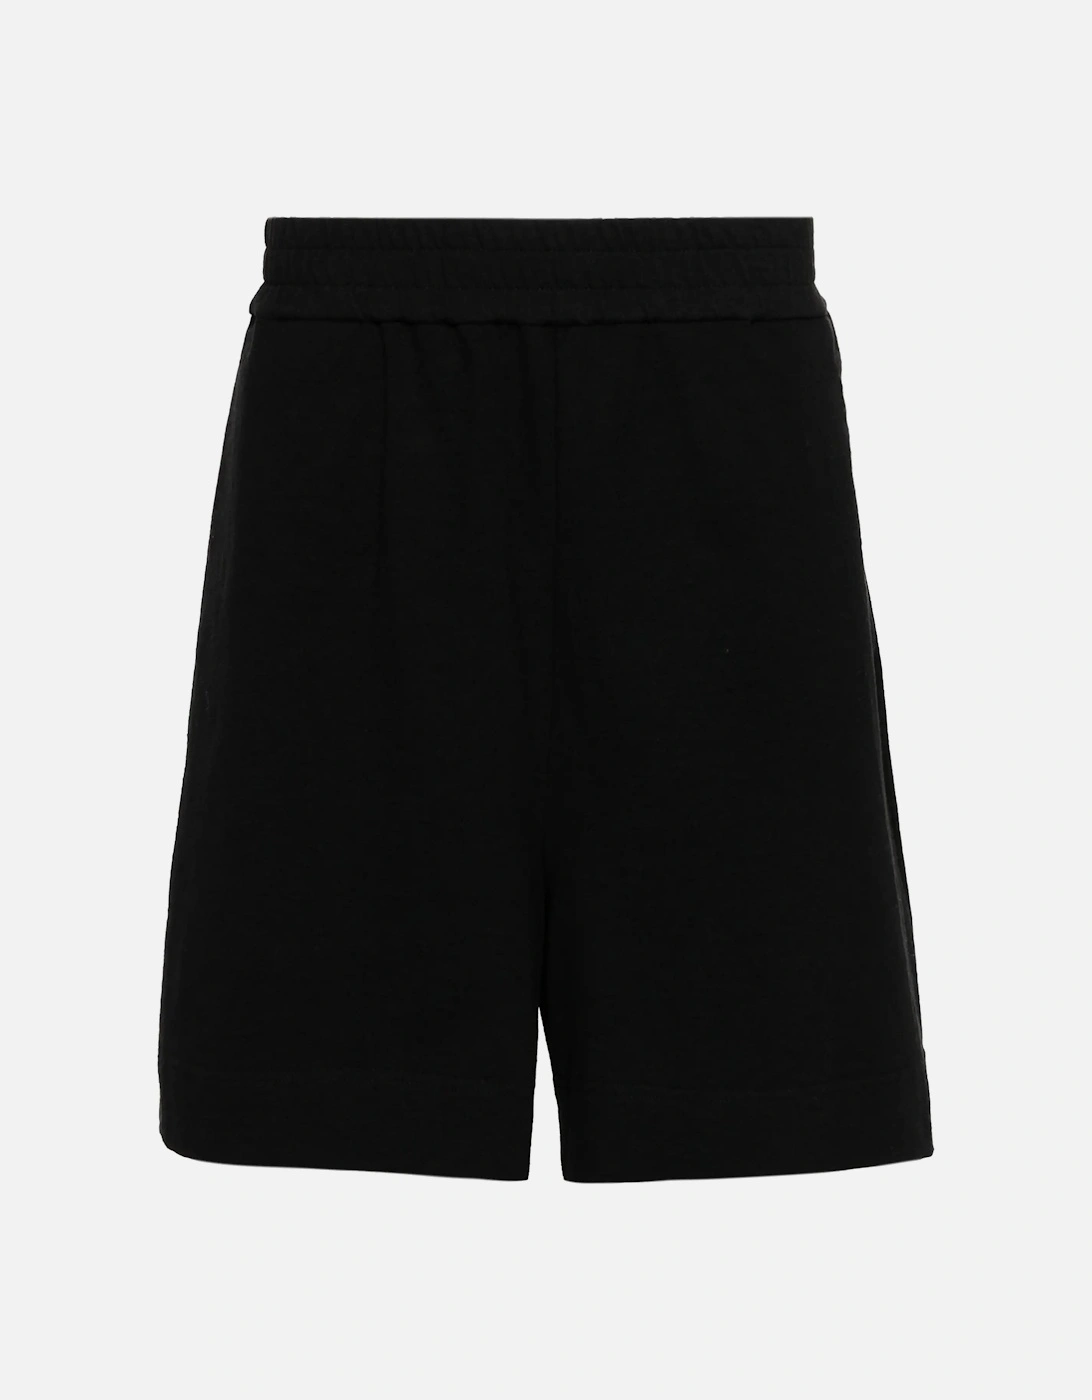 Diag Pocket Logo Printed Shorts in Black, 5 of 4